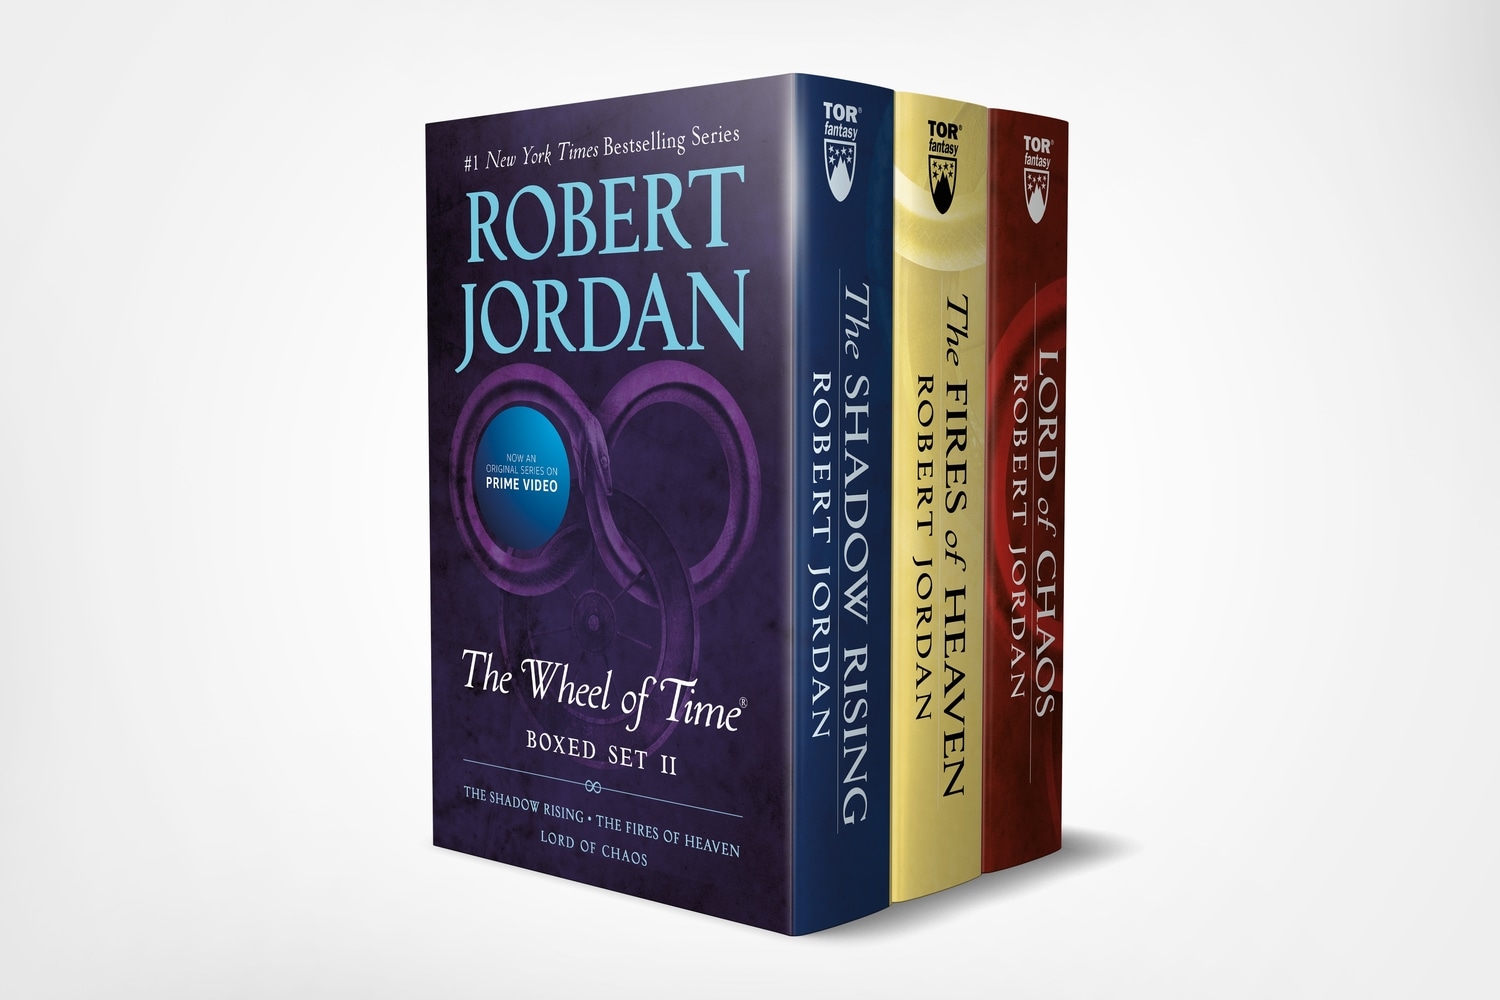 Book “Wheel of Time Premium Boxed Set II” by Robert Jordan — December 31, 2019